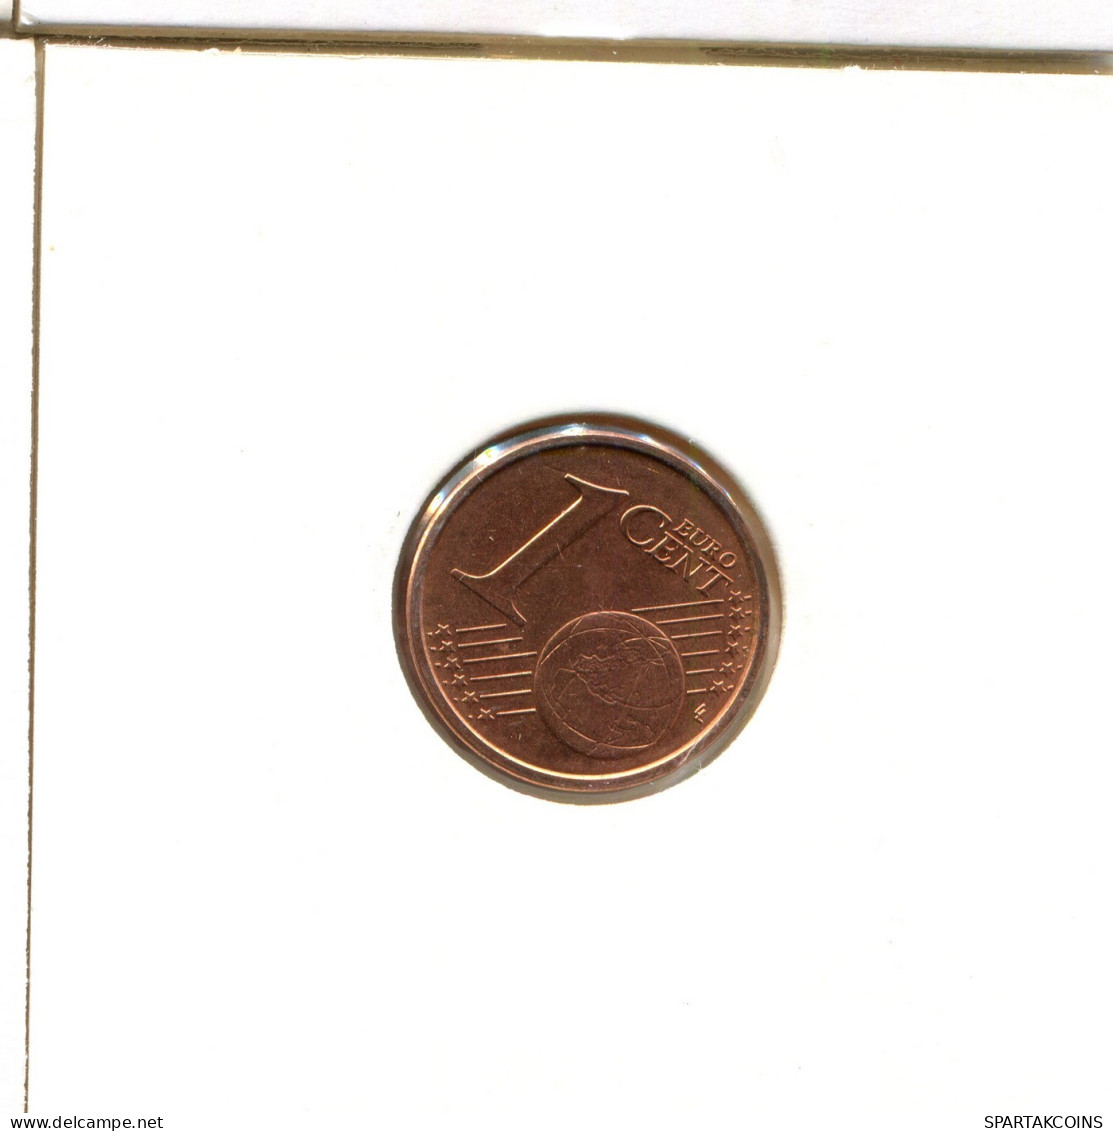 1 EURO CENT 2009 ITALIA ITALY Moneda #EU215.E.A - Italie